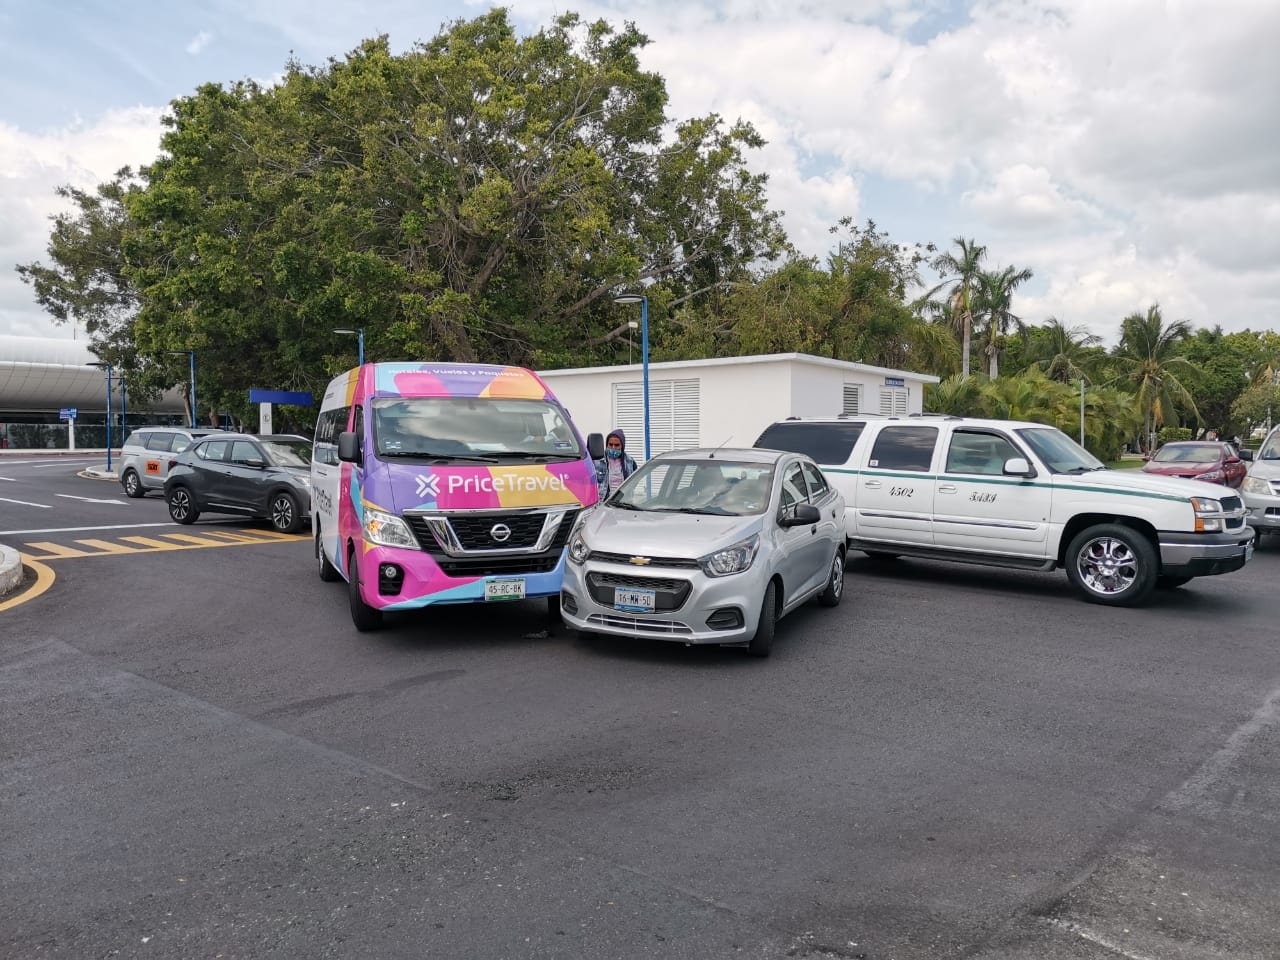 Automóvil de renta choca contra una camioneta en el aeropuerto de Cancún